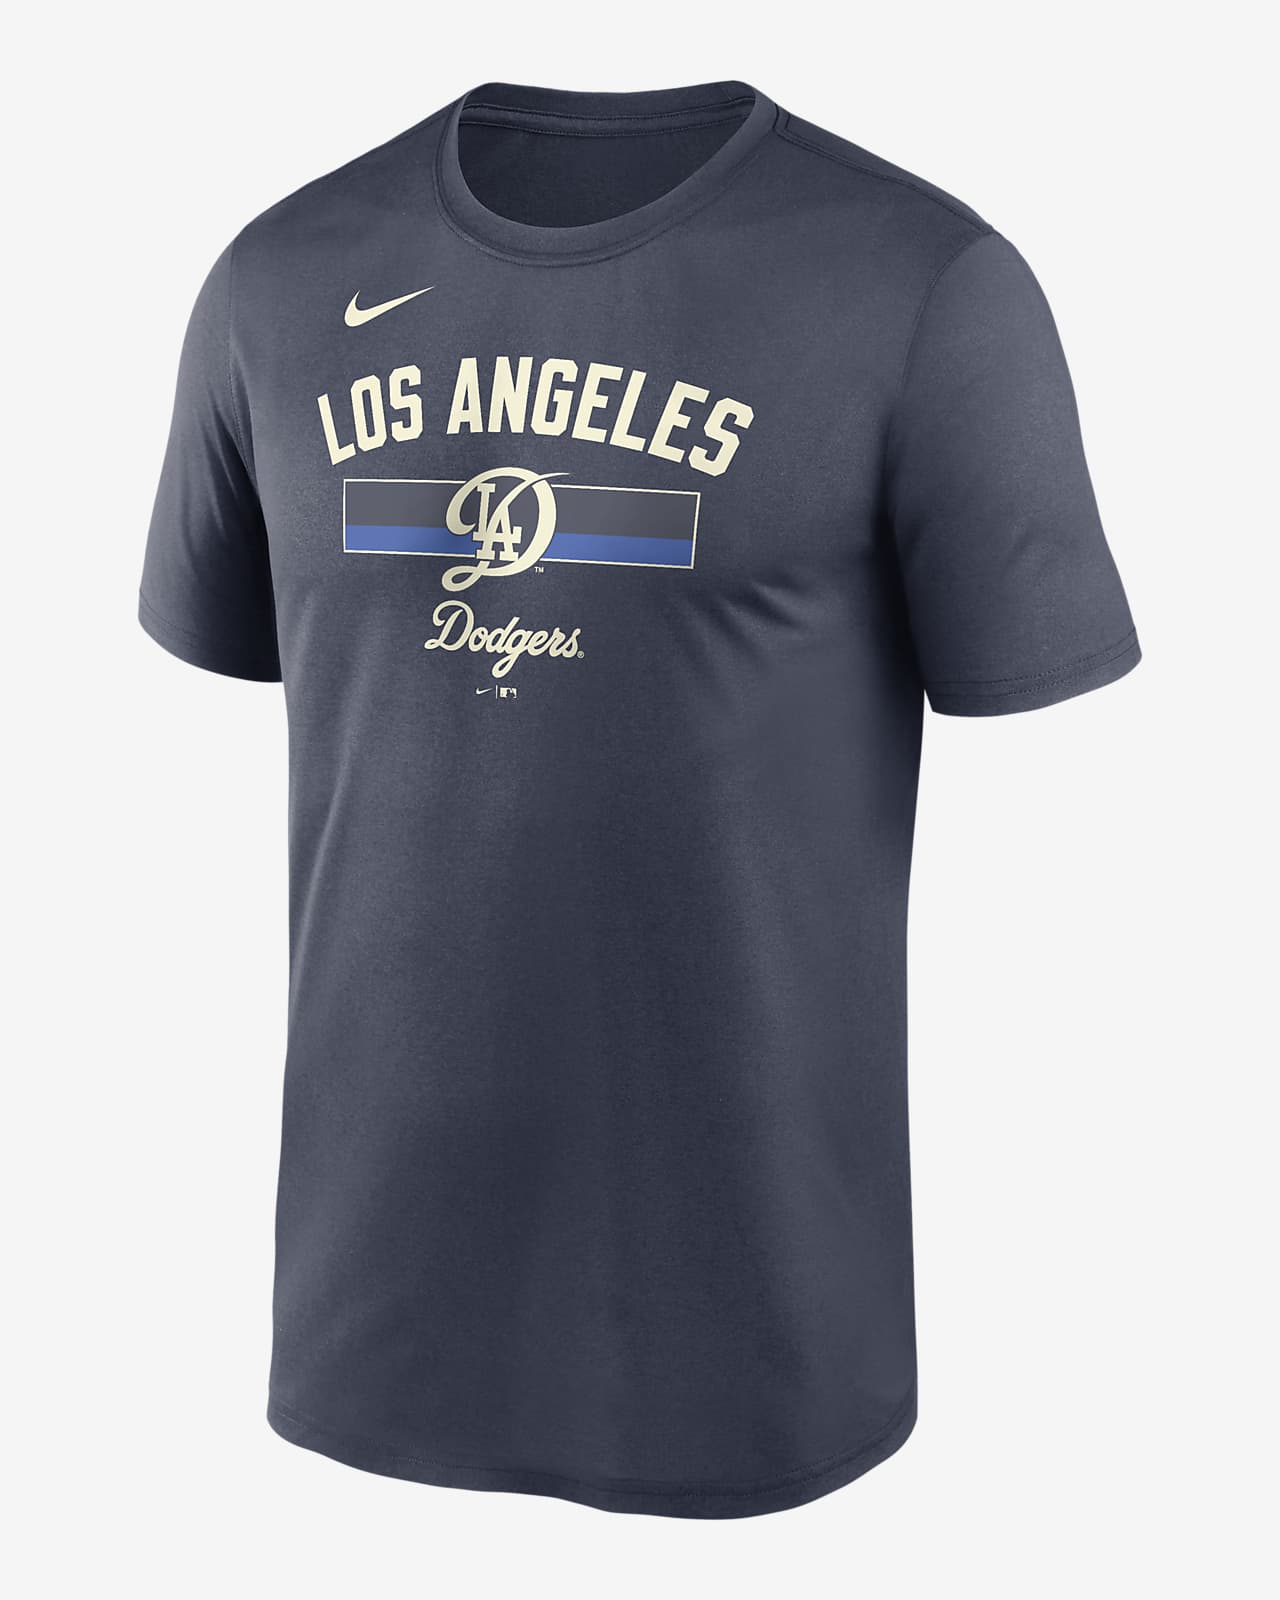 Playera Nike Dri-FIT de la MLB para hombre Los Angeles Dodgers City Connect Legend